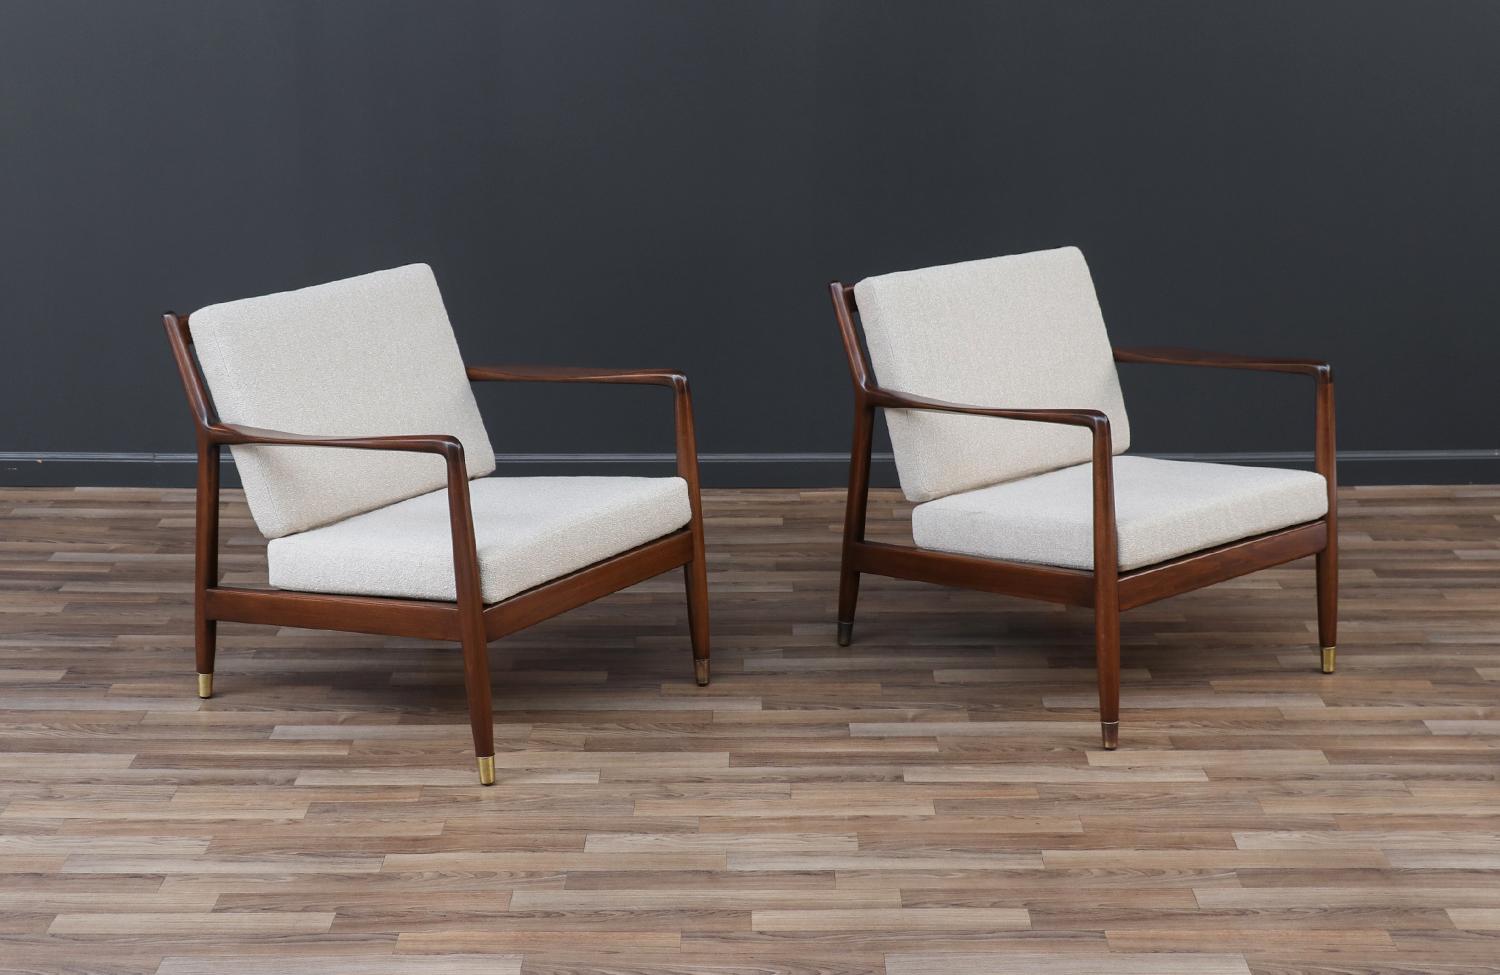 Die Umgestaltung eines Mid-Century Modern-Möbels ist wie die Wiederbelebung der Geschichte, und wir gehen diese Reise mit Leidenschaft und Präzision an. Mit mehr als 17 Jahren handwerklicher Erfahrung ist unser Studio in Los Angeles ein Ort, an dem